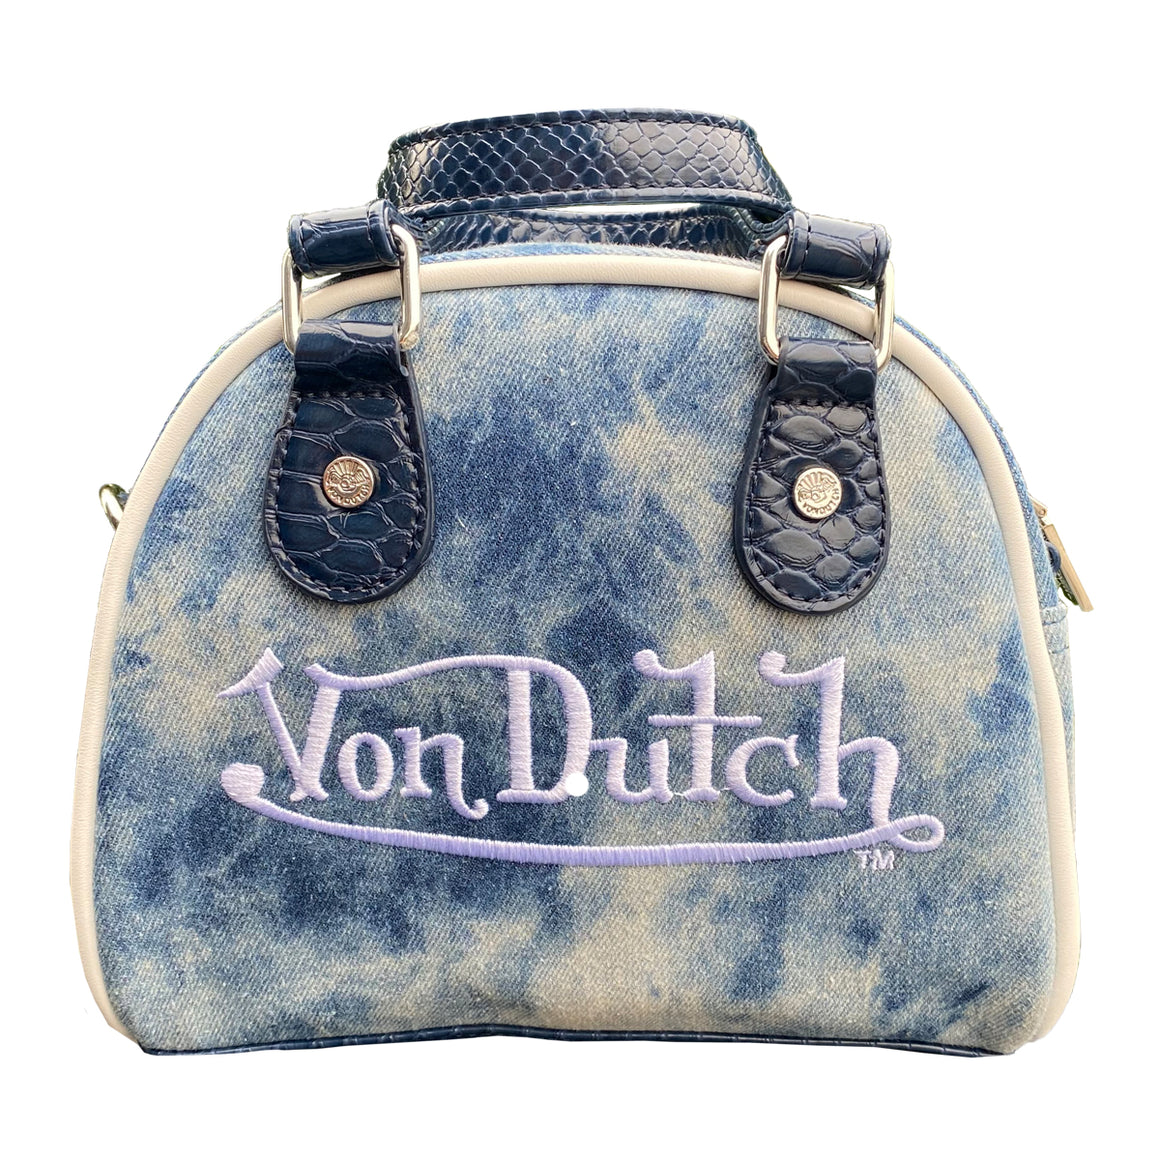 Products - Von Dutch